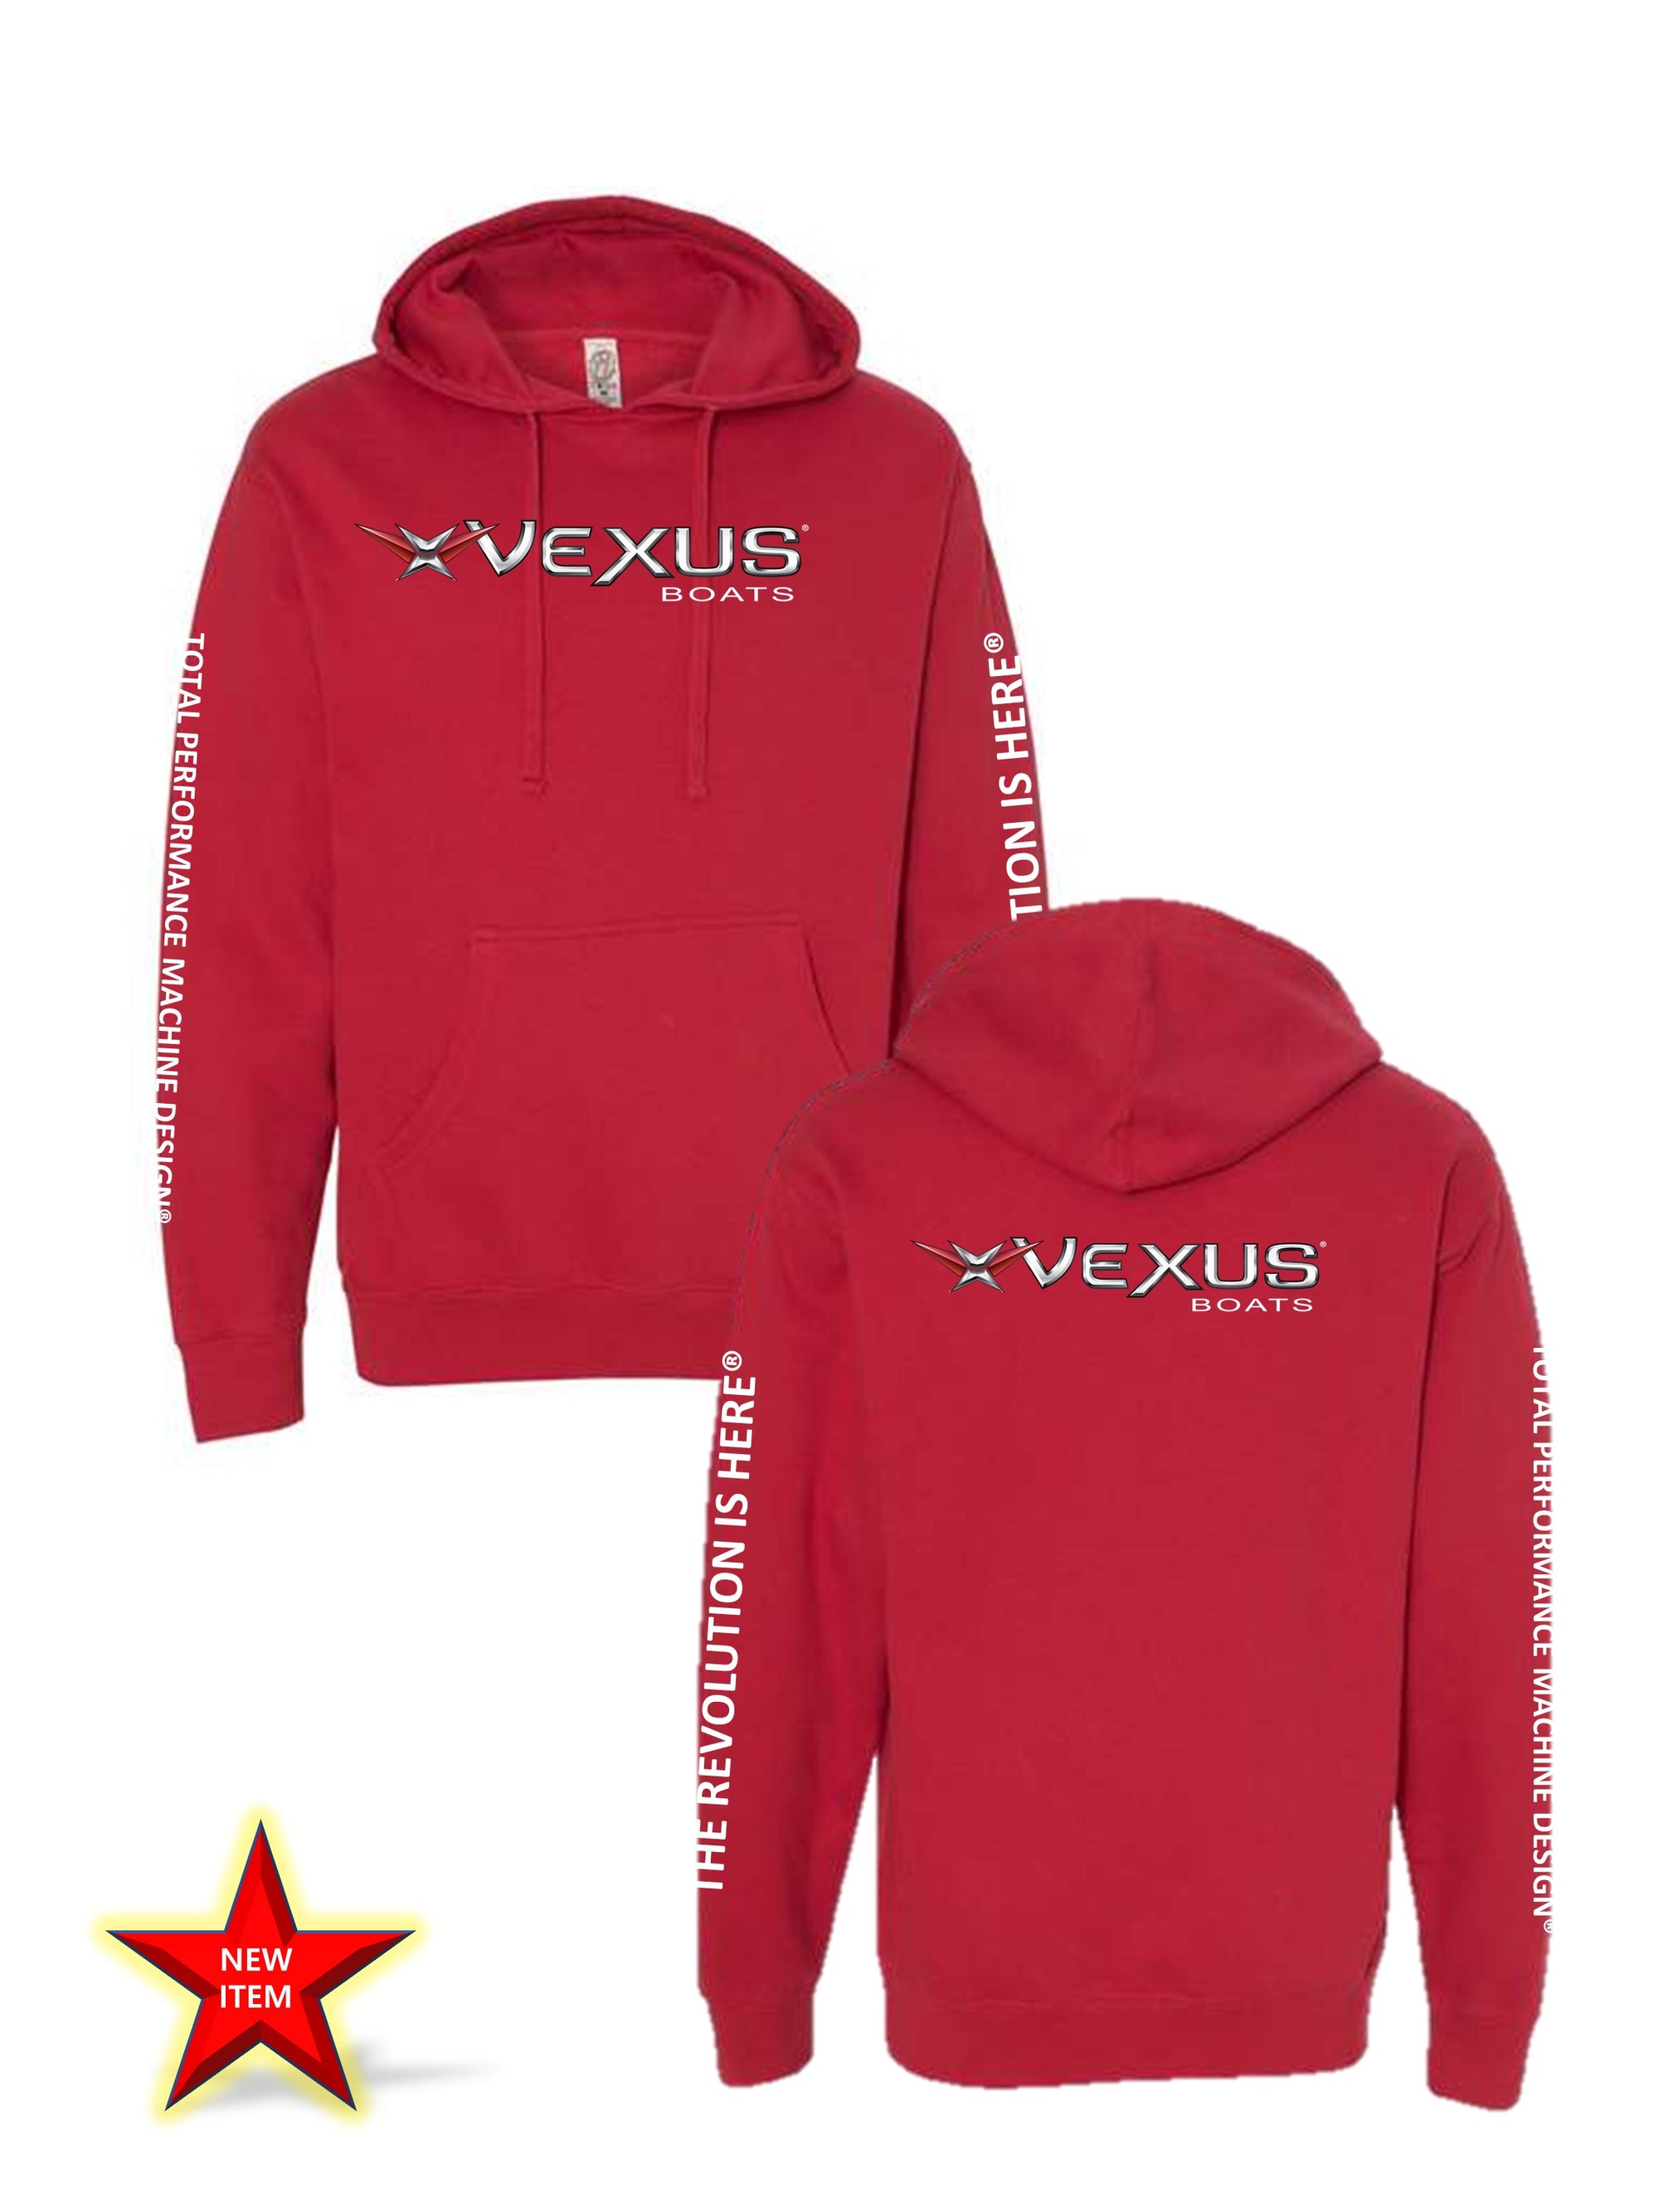 VEXUS® / AFTCO Gunmetal Hydronaut Jacket - VexusGear / Topwater Brands